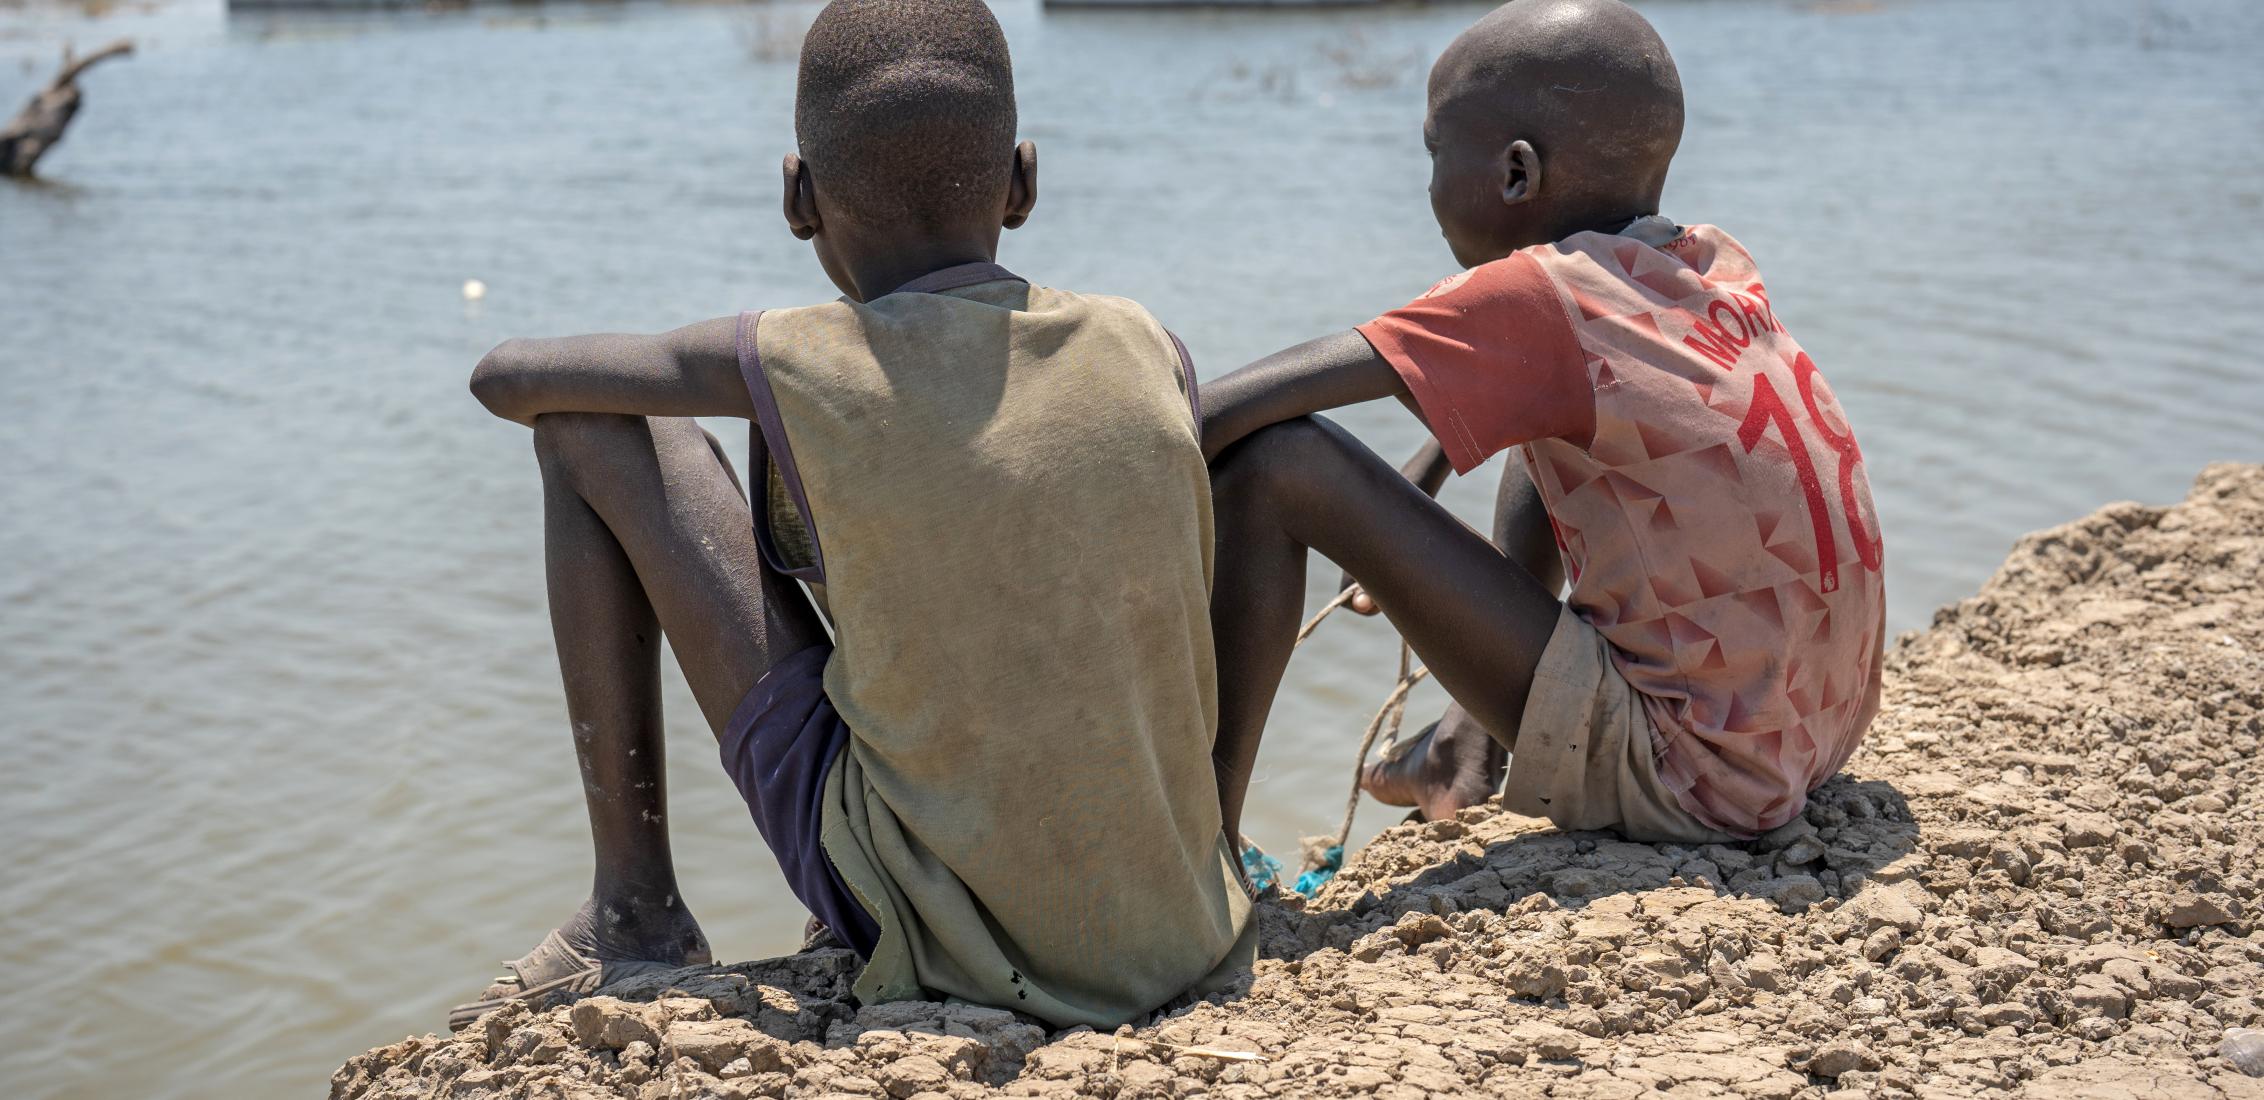 UNI424890/Naftalin Le 4 mars 2023, deux garçons regardent leur école inondée à Bentiu, dans l'État de l'Unité, au Soudan du Sud. D'importantes inondations ont touché des milliers de personnes à travers l'État de l'Unité et beaucoup d'entre elles ont dû fuir leur maison.